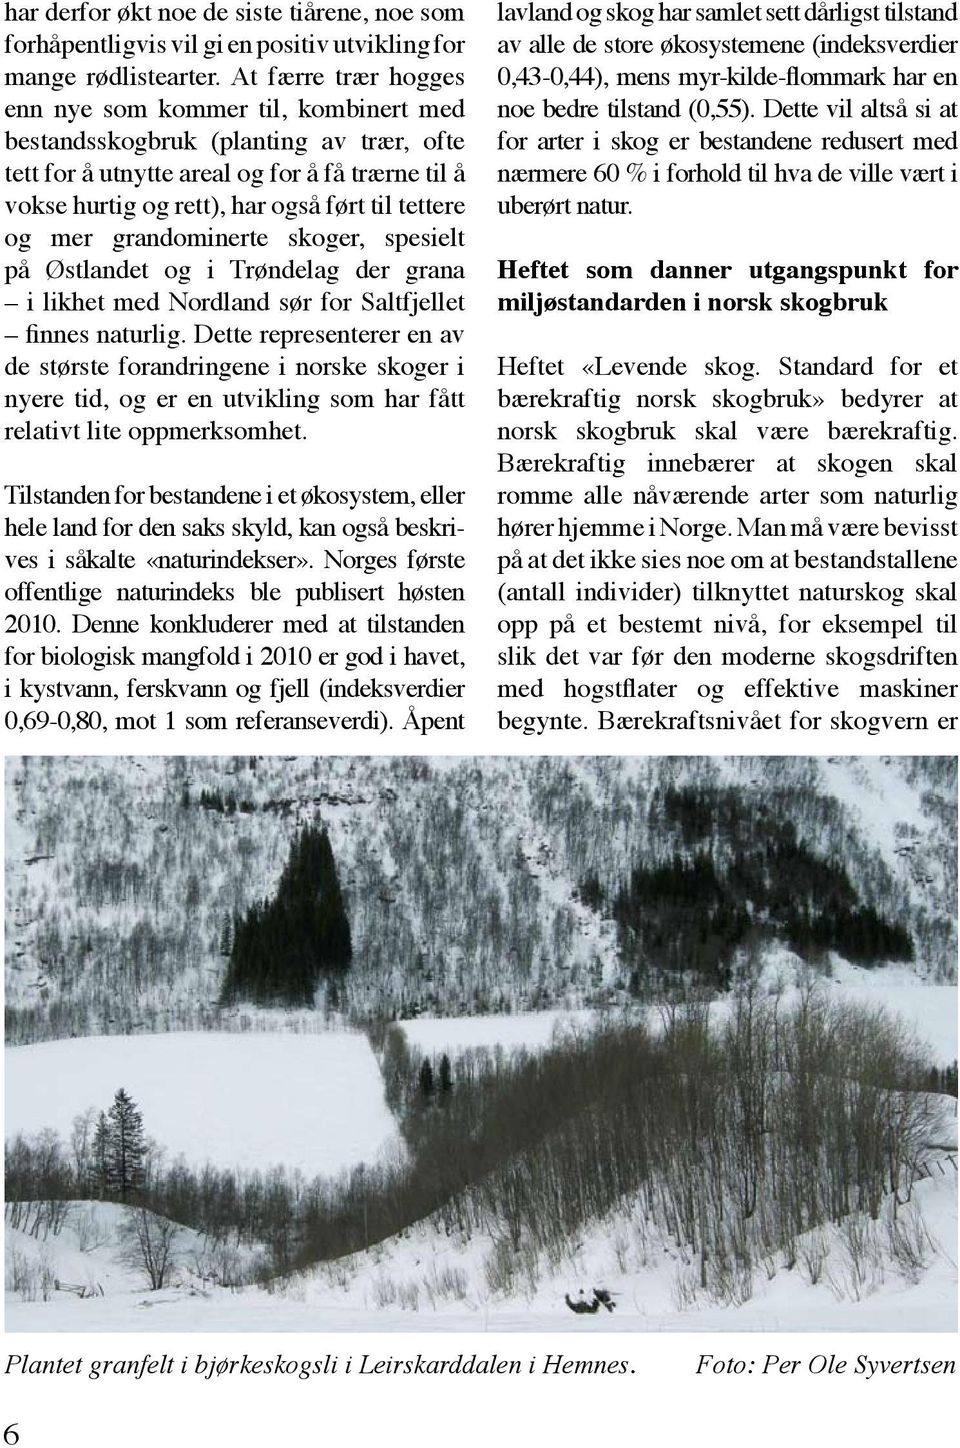 og mer grandominerte skoger, spesielt på Østlandet og i Trøndelag der grana i likhet med Nordland sør for Saltfjellet finnes naturlig.